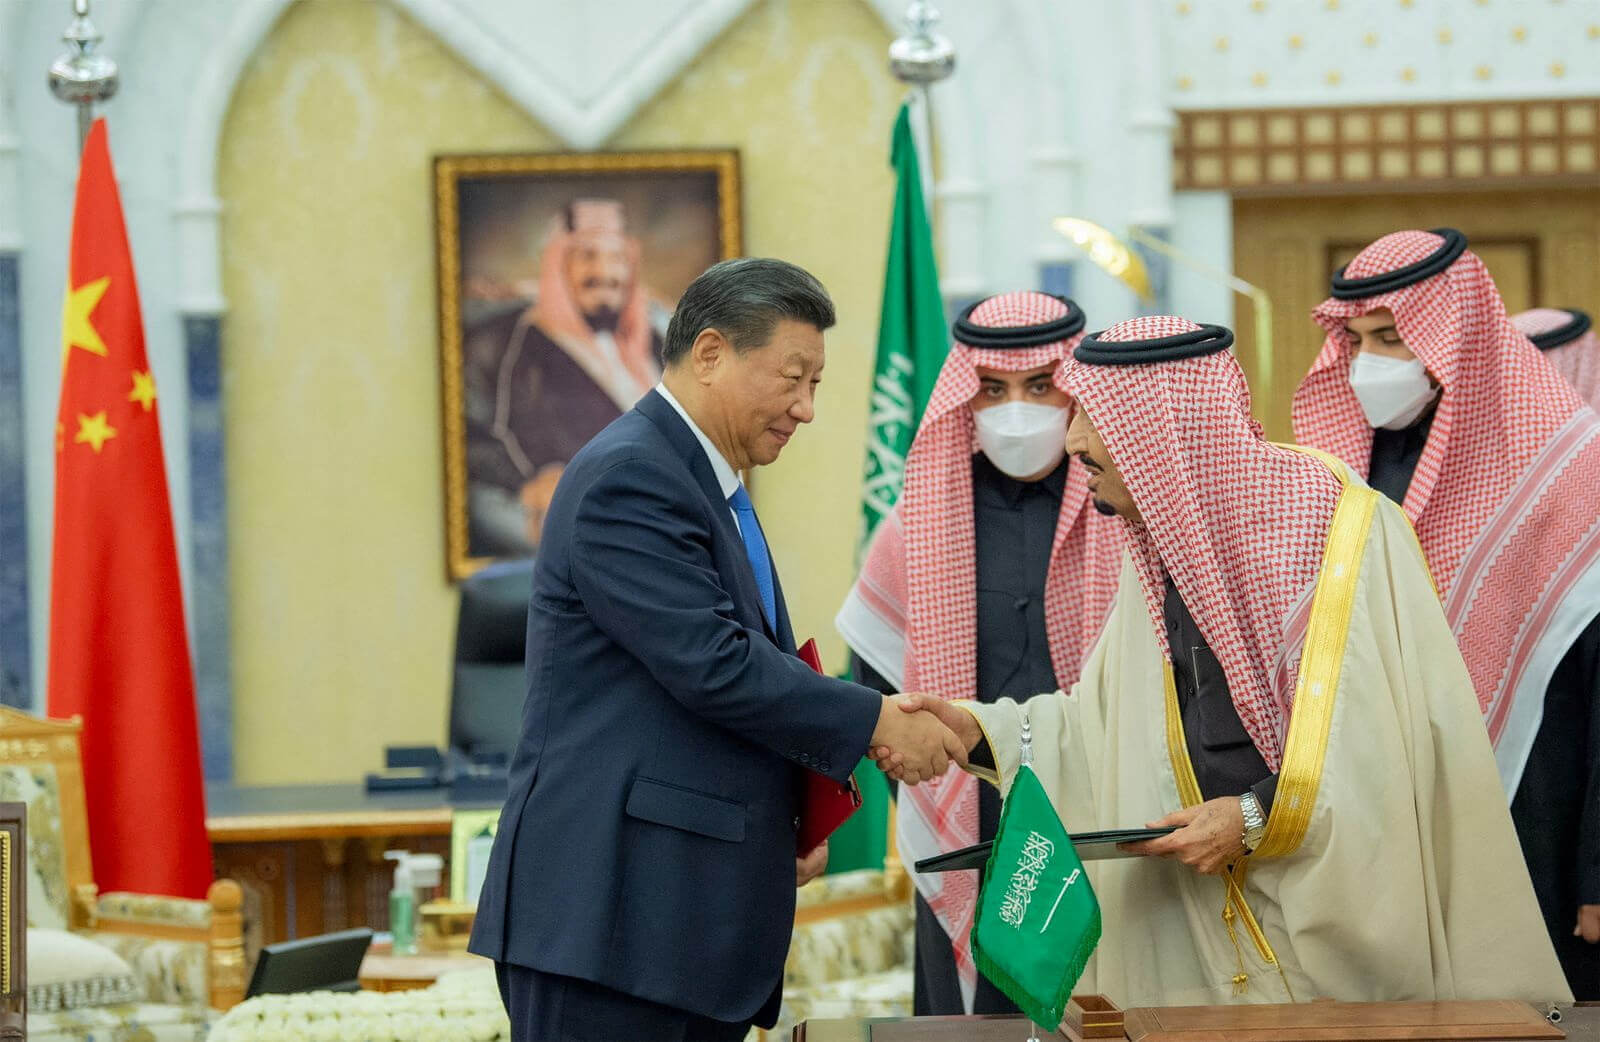 SUMMARY: Chinese President Xi Jinping’s Meetings in Saudi Arabia